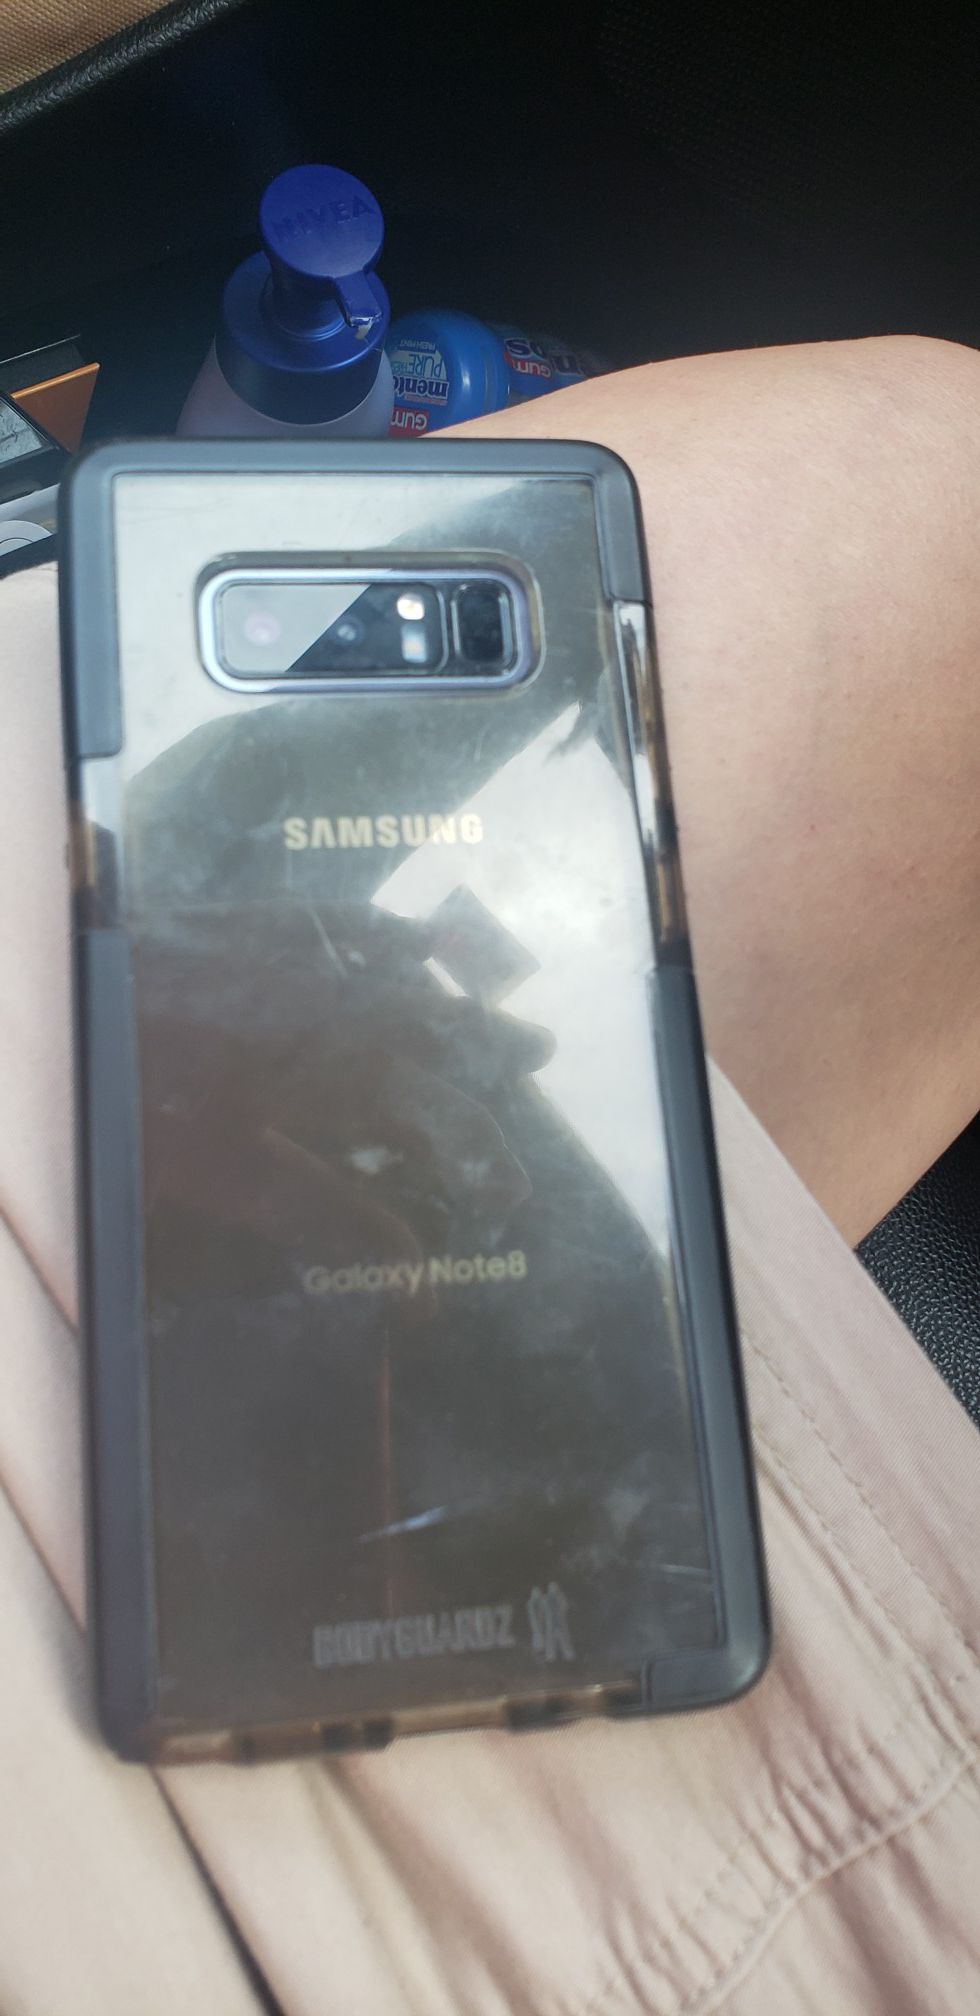 Samsung Galaxy note 8 64 gb